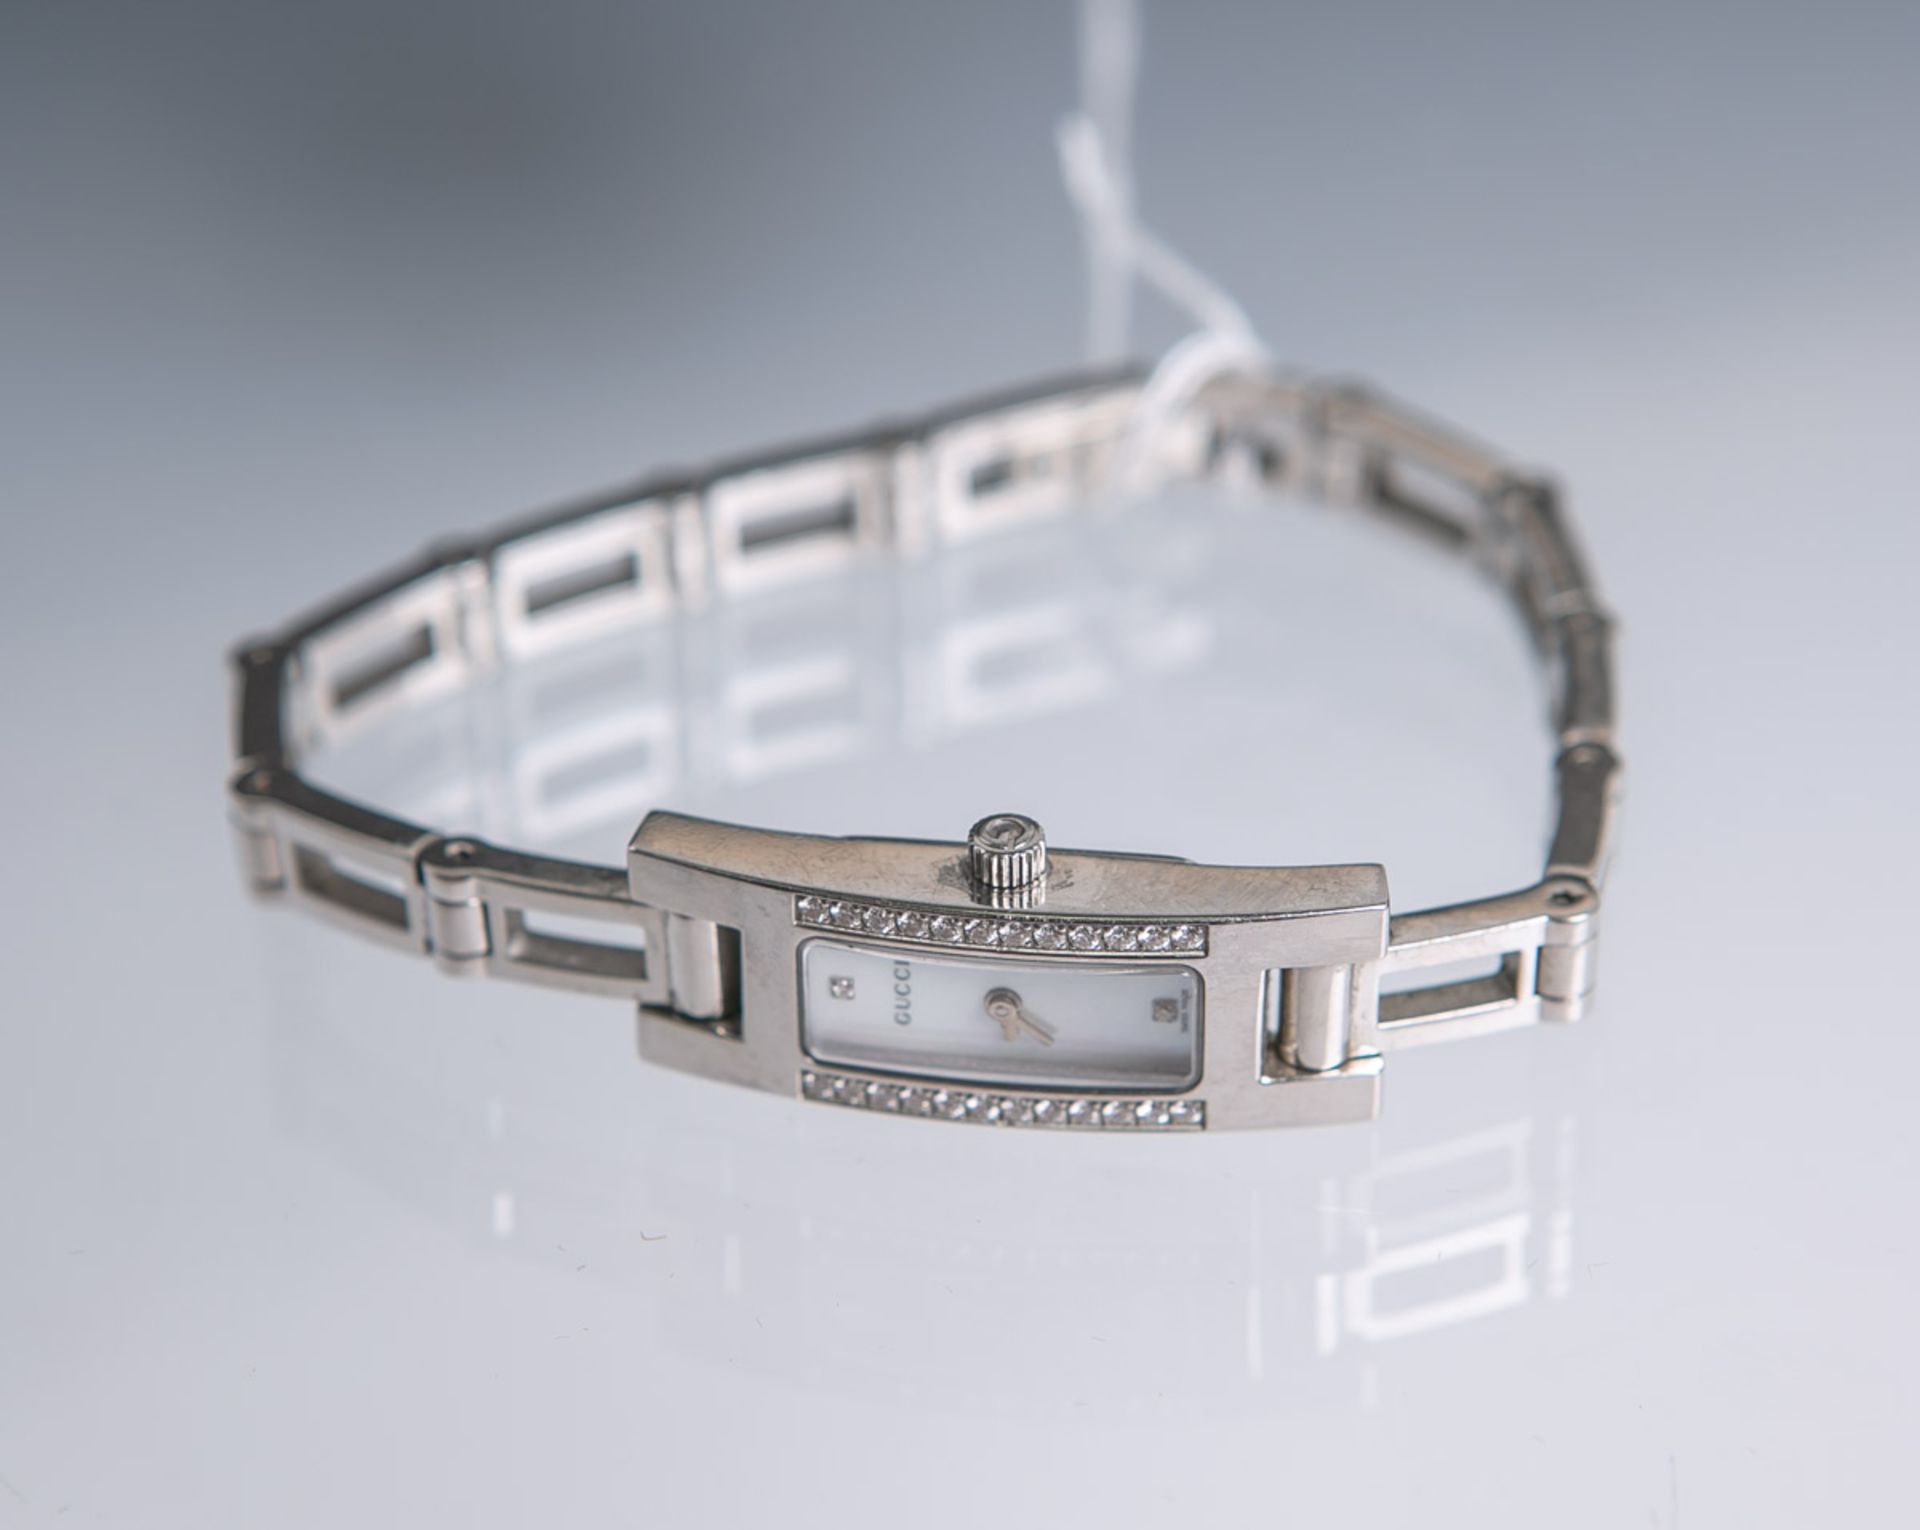 Damenarmbanduhr "Gucci" (Swiss made), Edelstahl, Perlmutt-Zifferblatt in rechteckiger Form